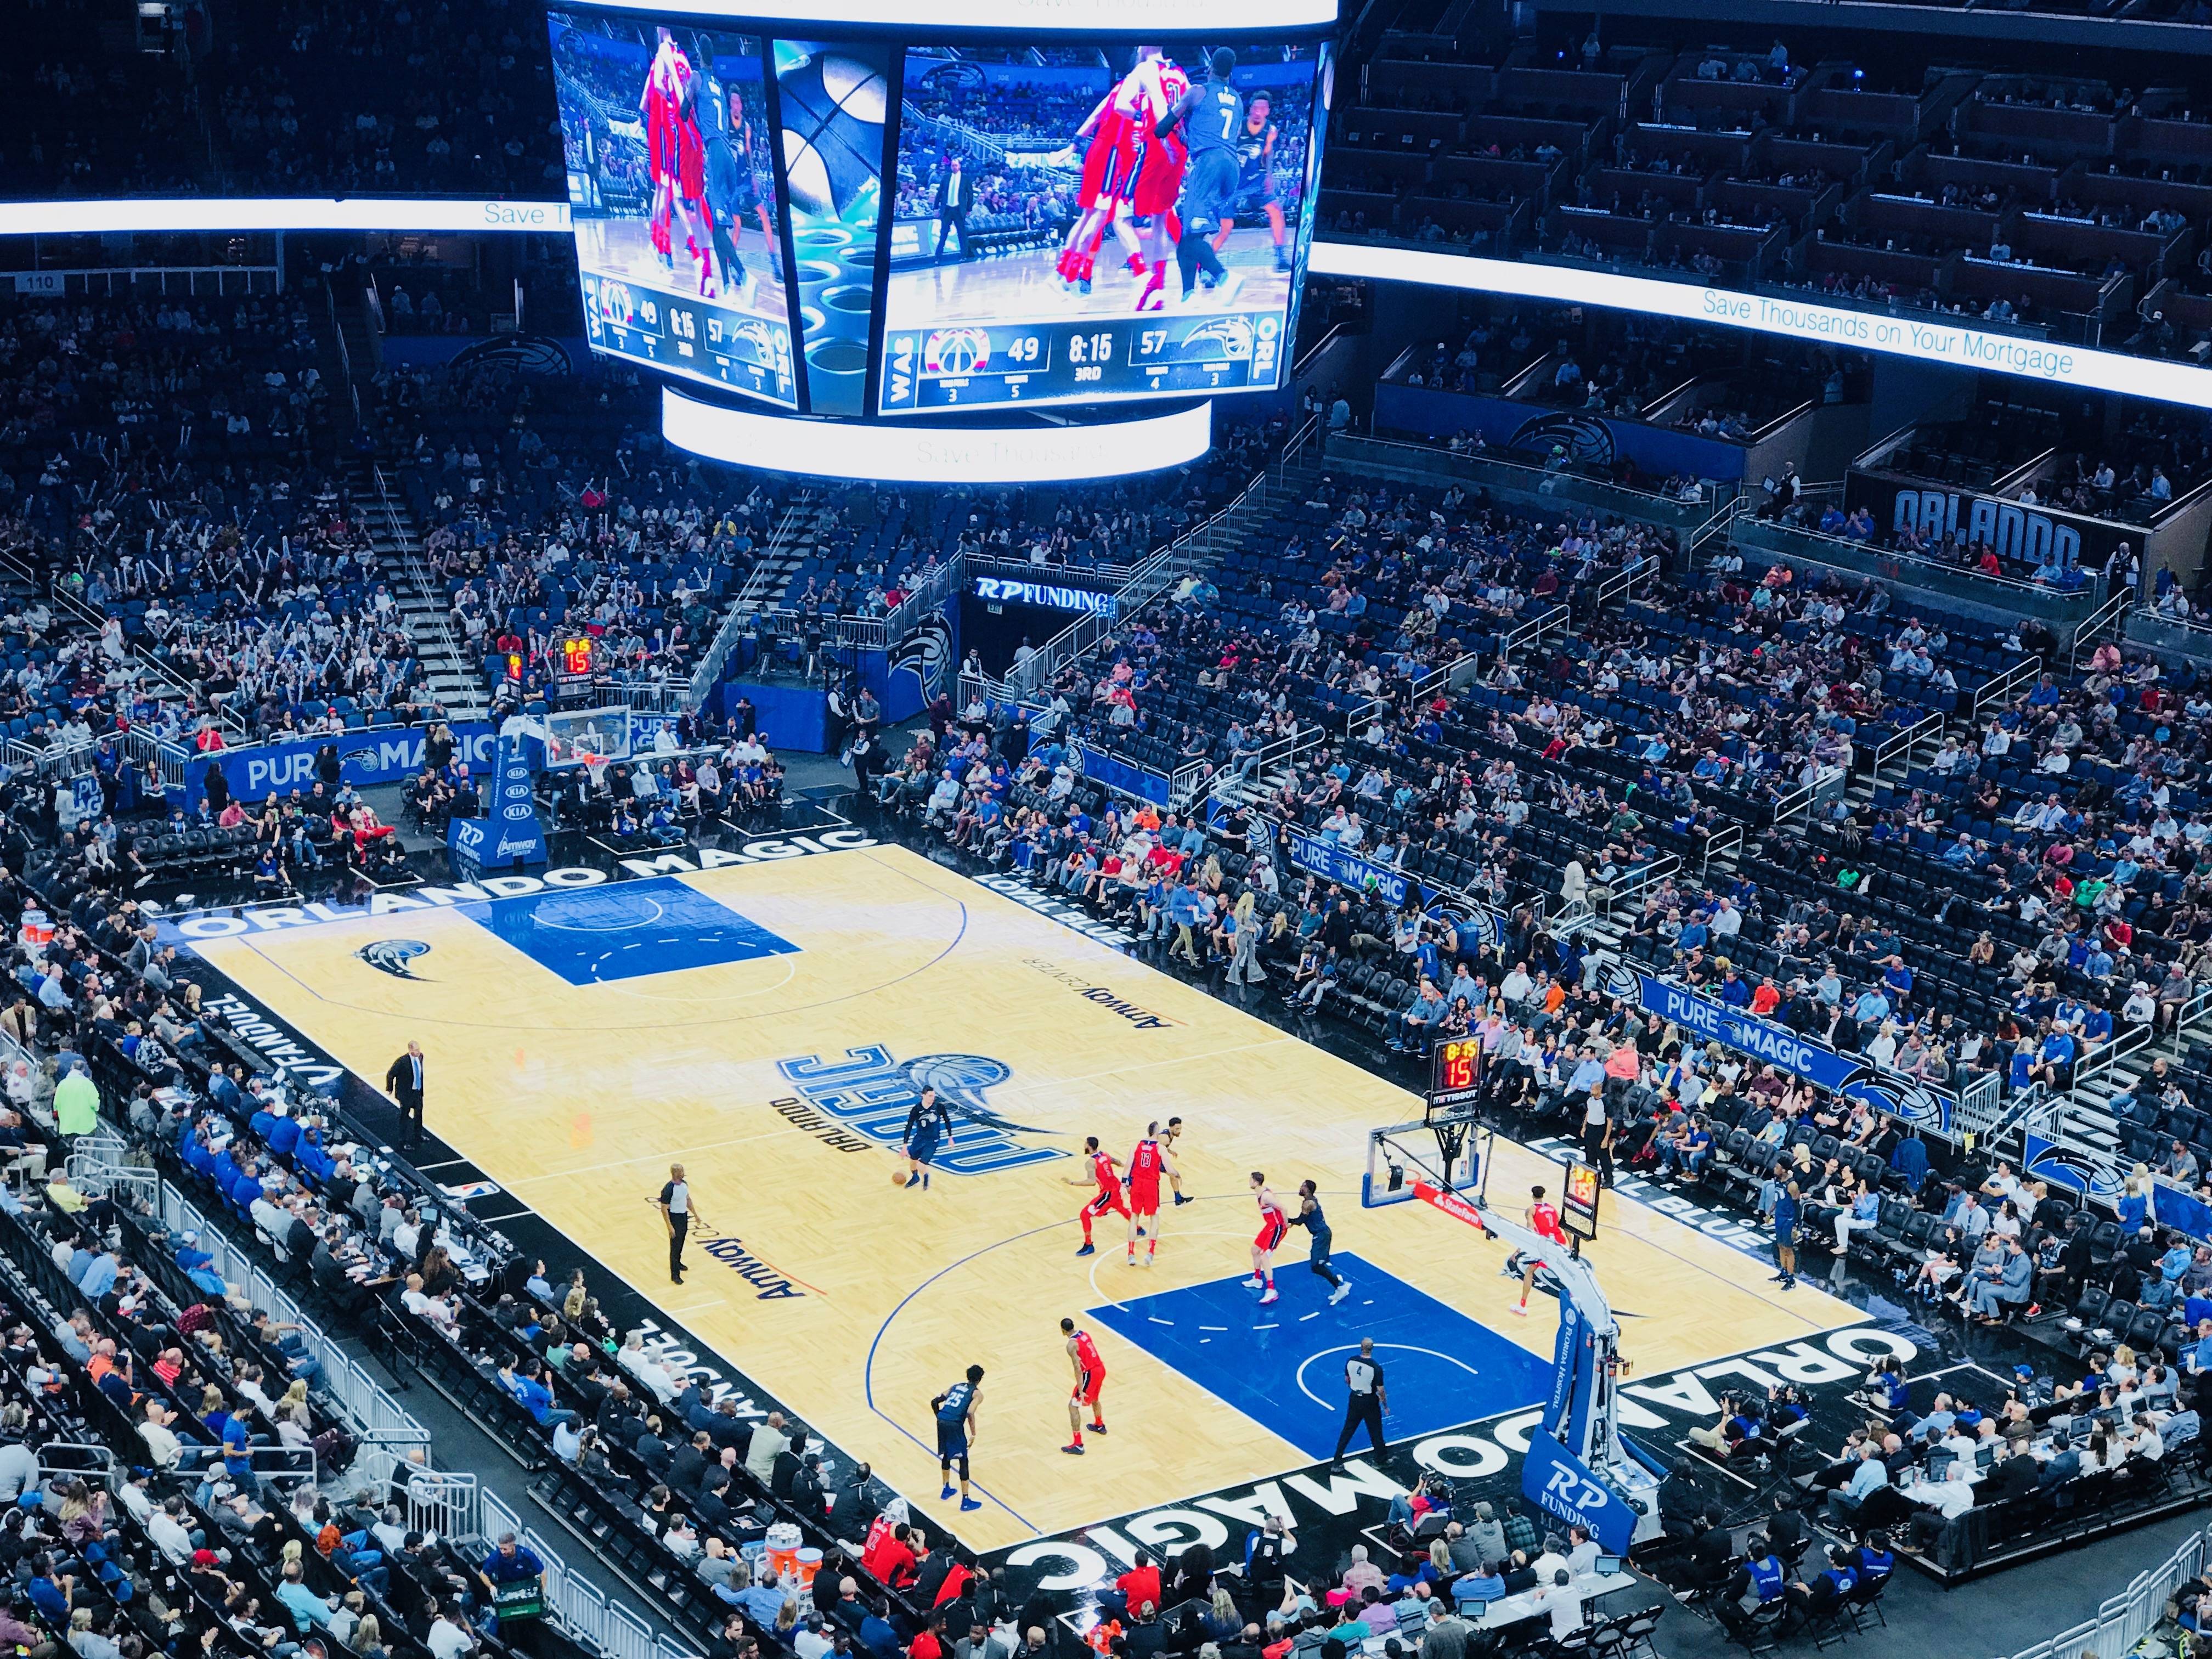 Orlando Magic: como são os Jogos da NBA em Orlando